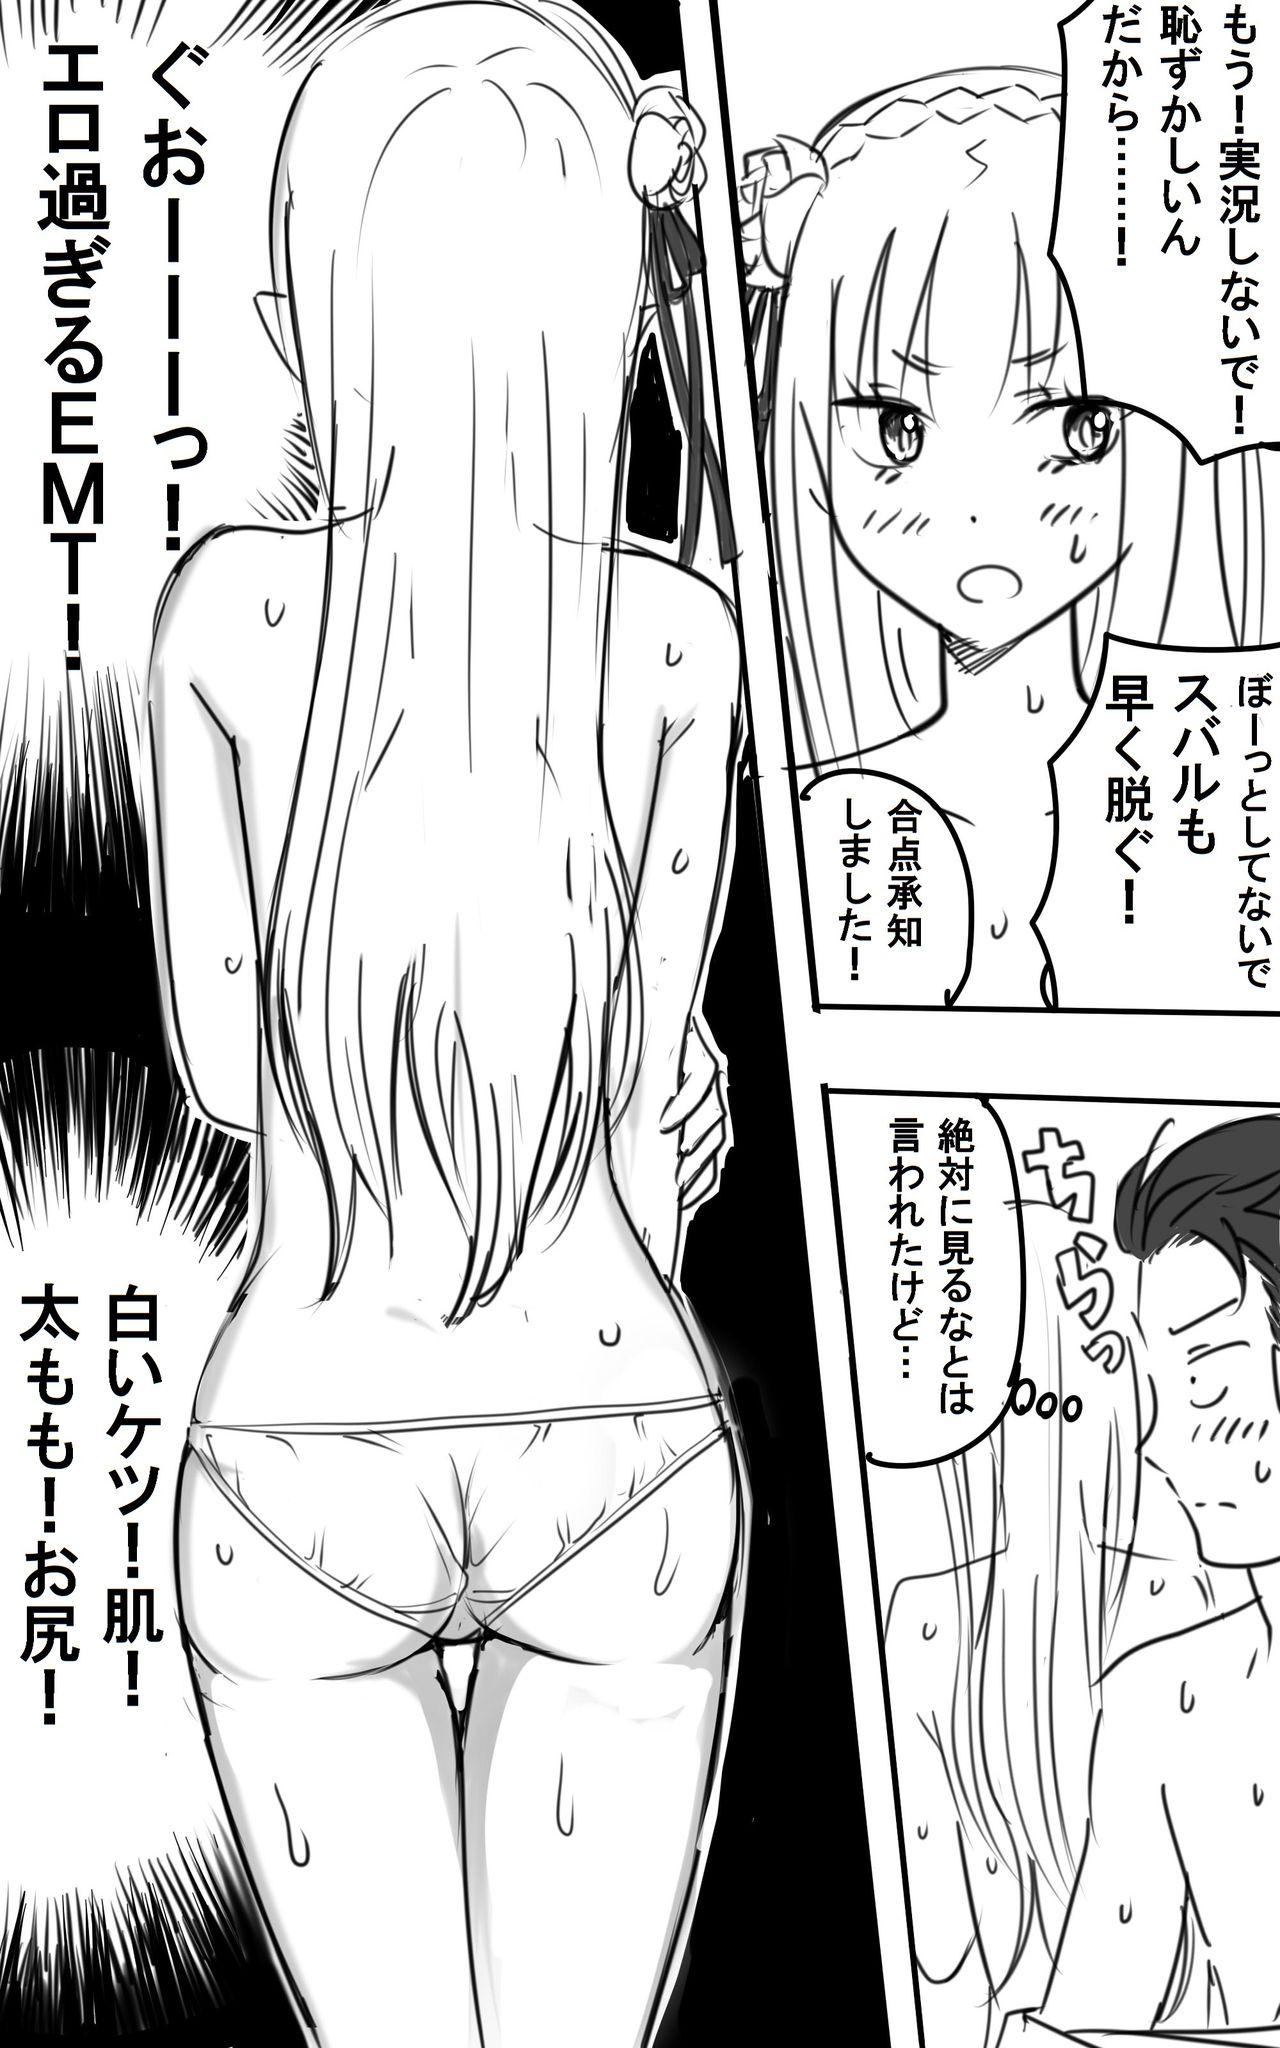 Breeding [NIJI-TERU] Emilia-tan to Sugooku Sex Sono 1-10 (Re:Zero kara Hajimeru Isekai Seikatsu) - Re zero kara hajimeru isekai seikatsu Assfuck - Page 7